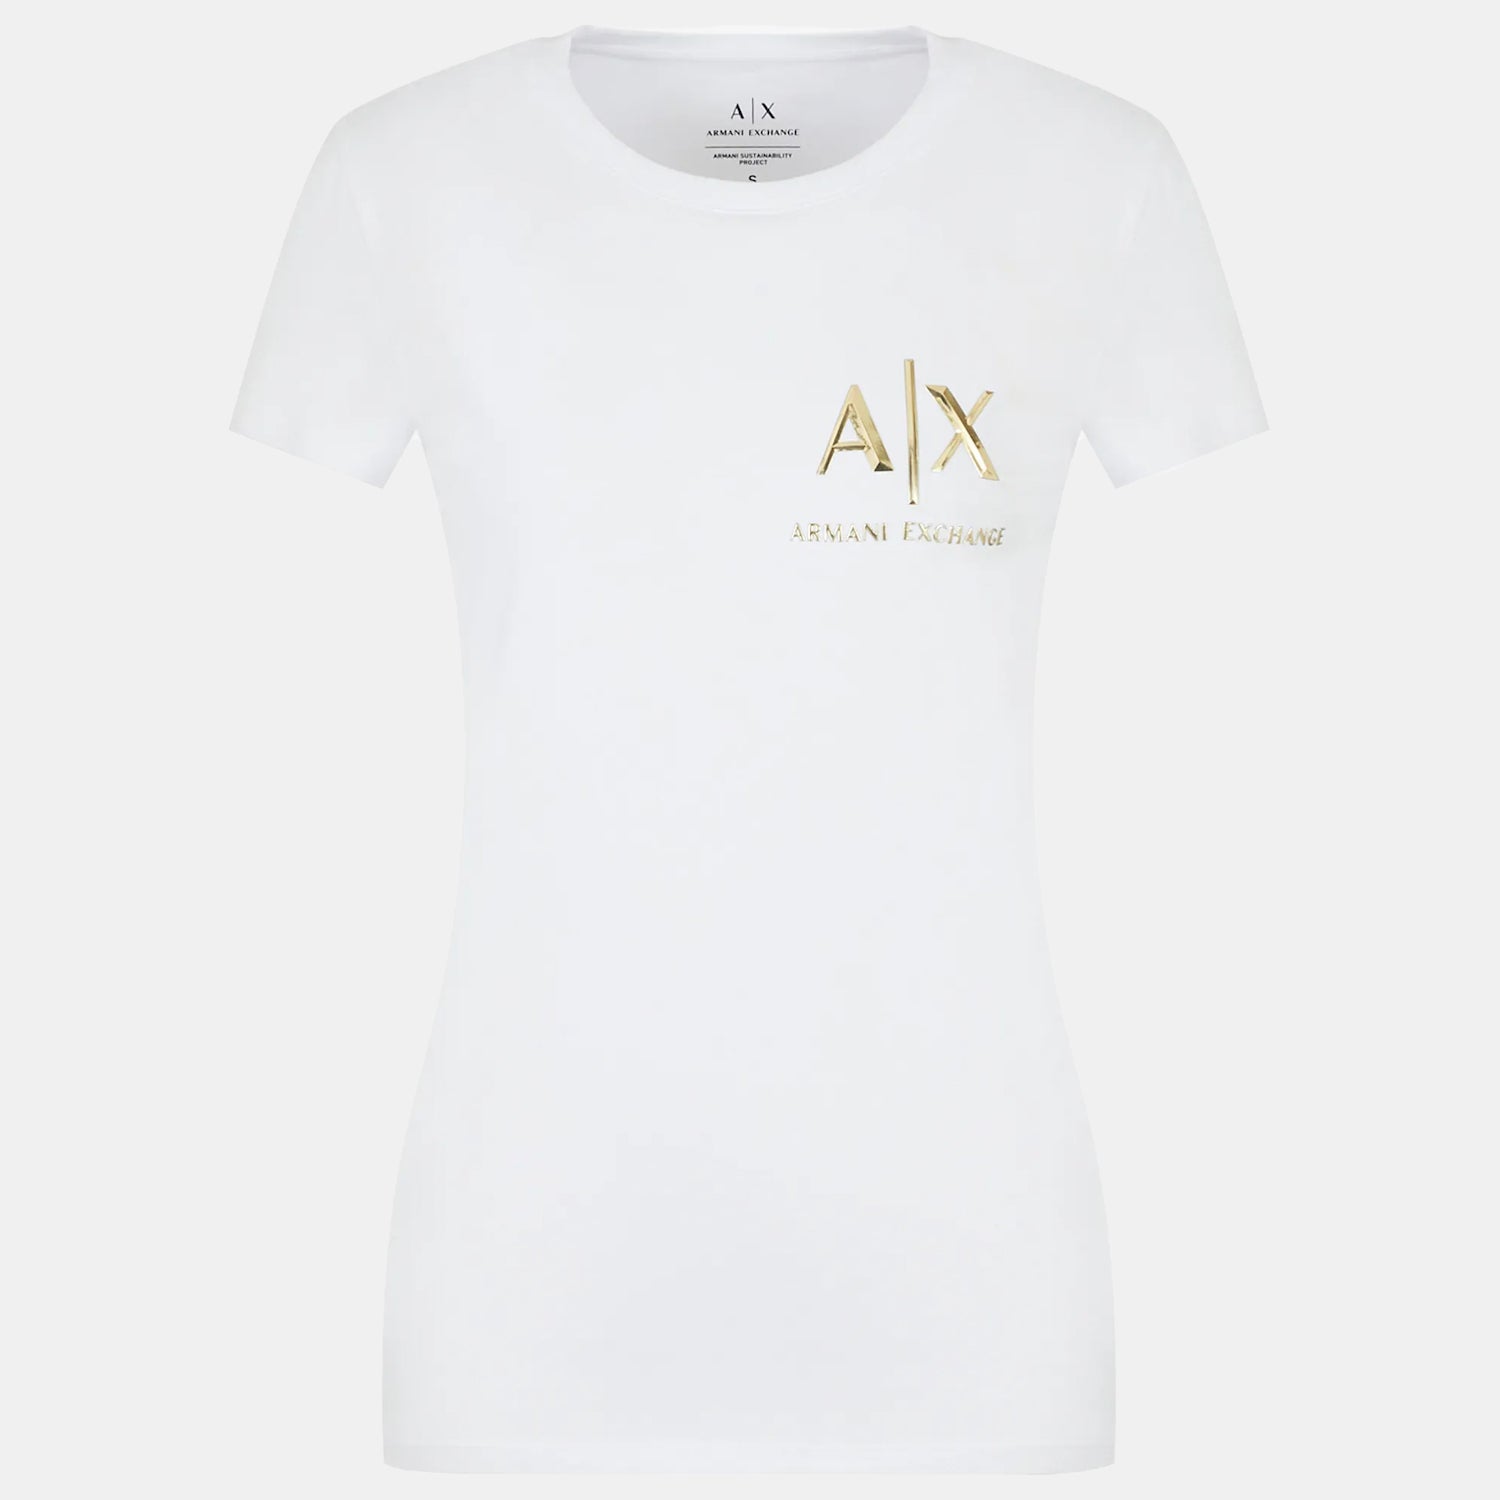 Armani Exchange T Shirt 6lyt52 Yj9xz White Branco_shot3